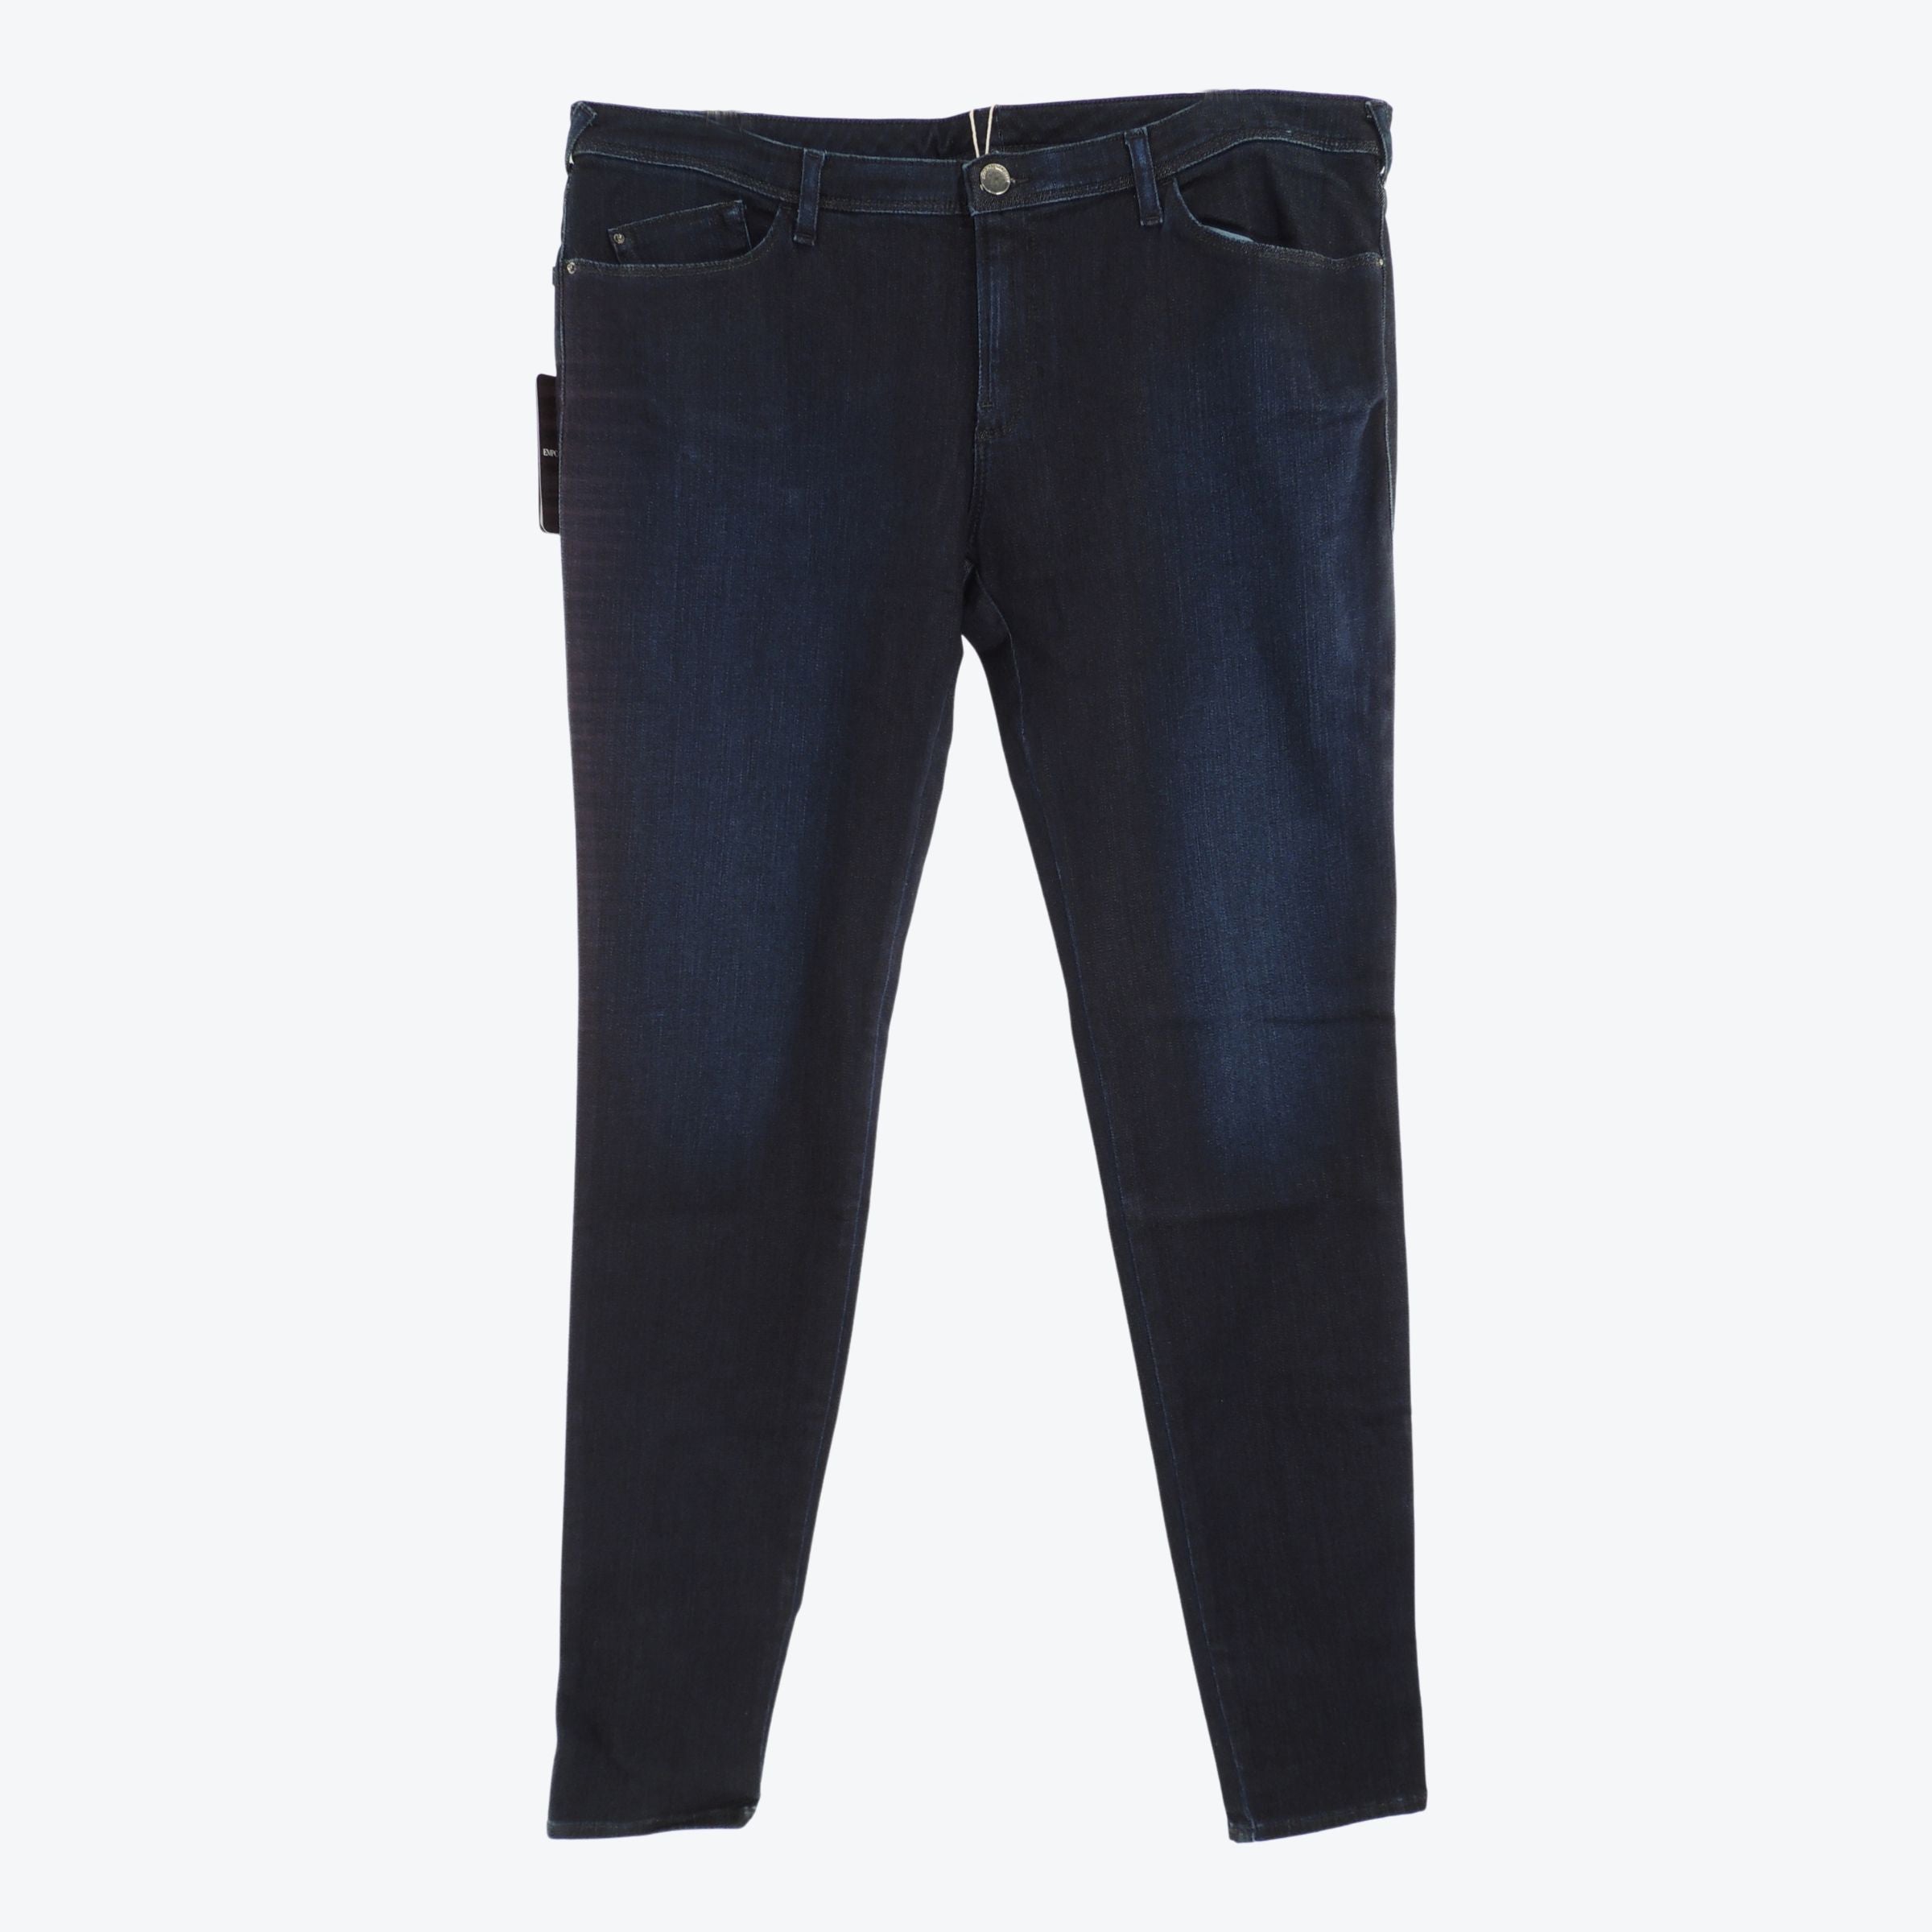 Emporio Armani J28  Skinny Jeans in Denim Blue 33in Waist